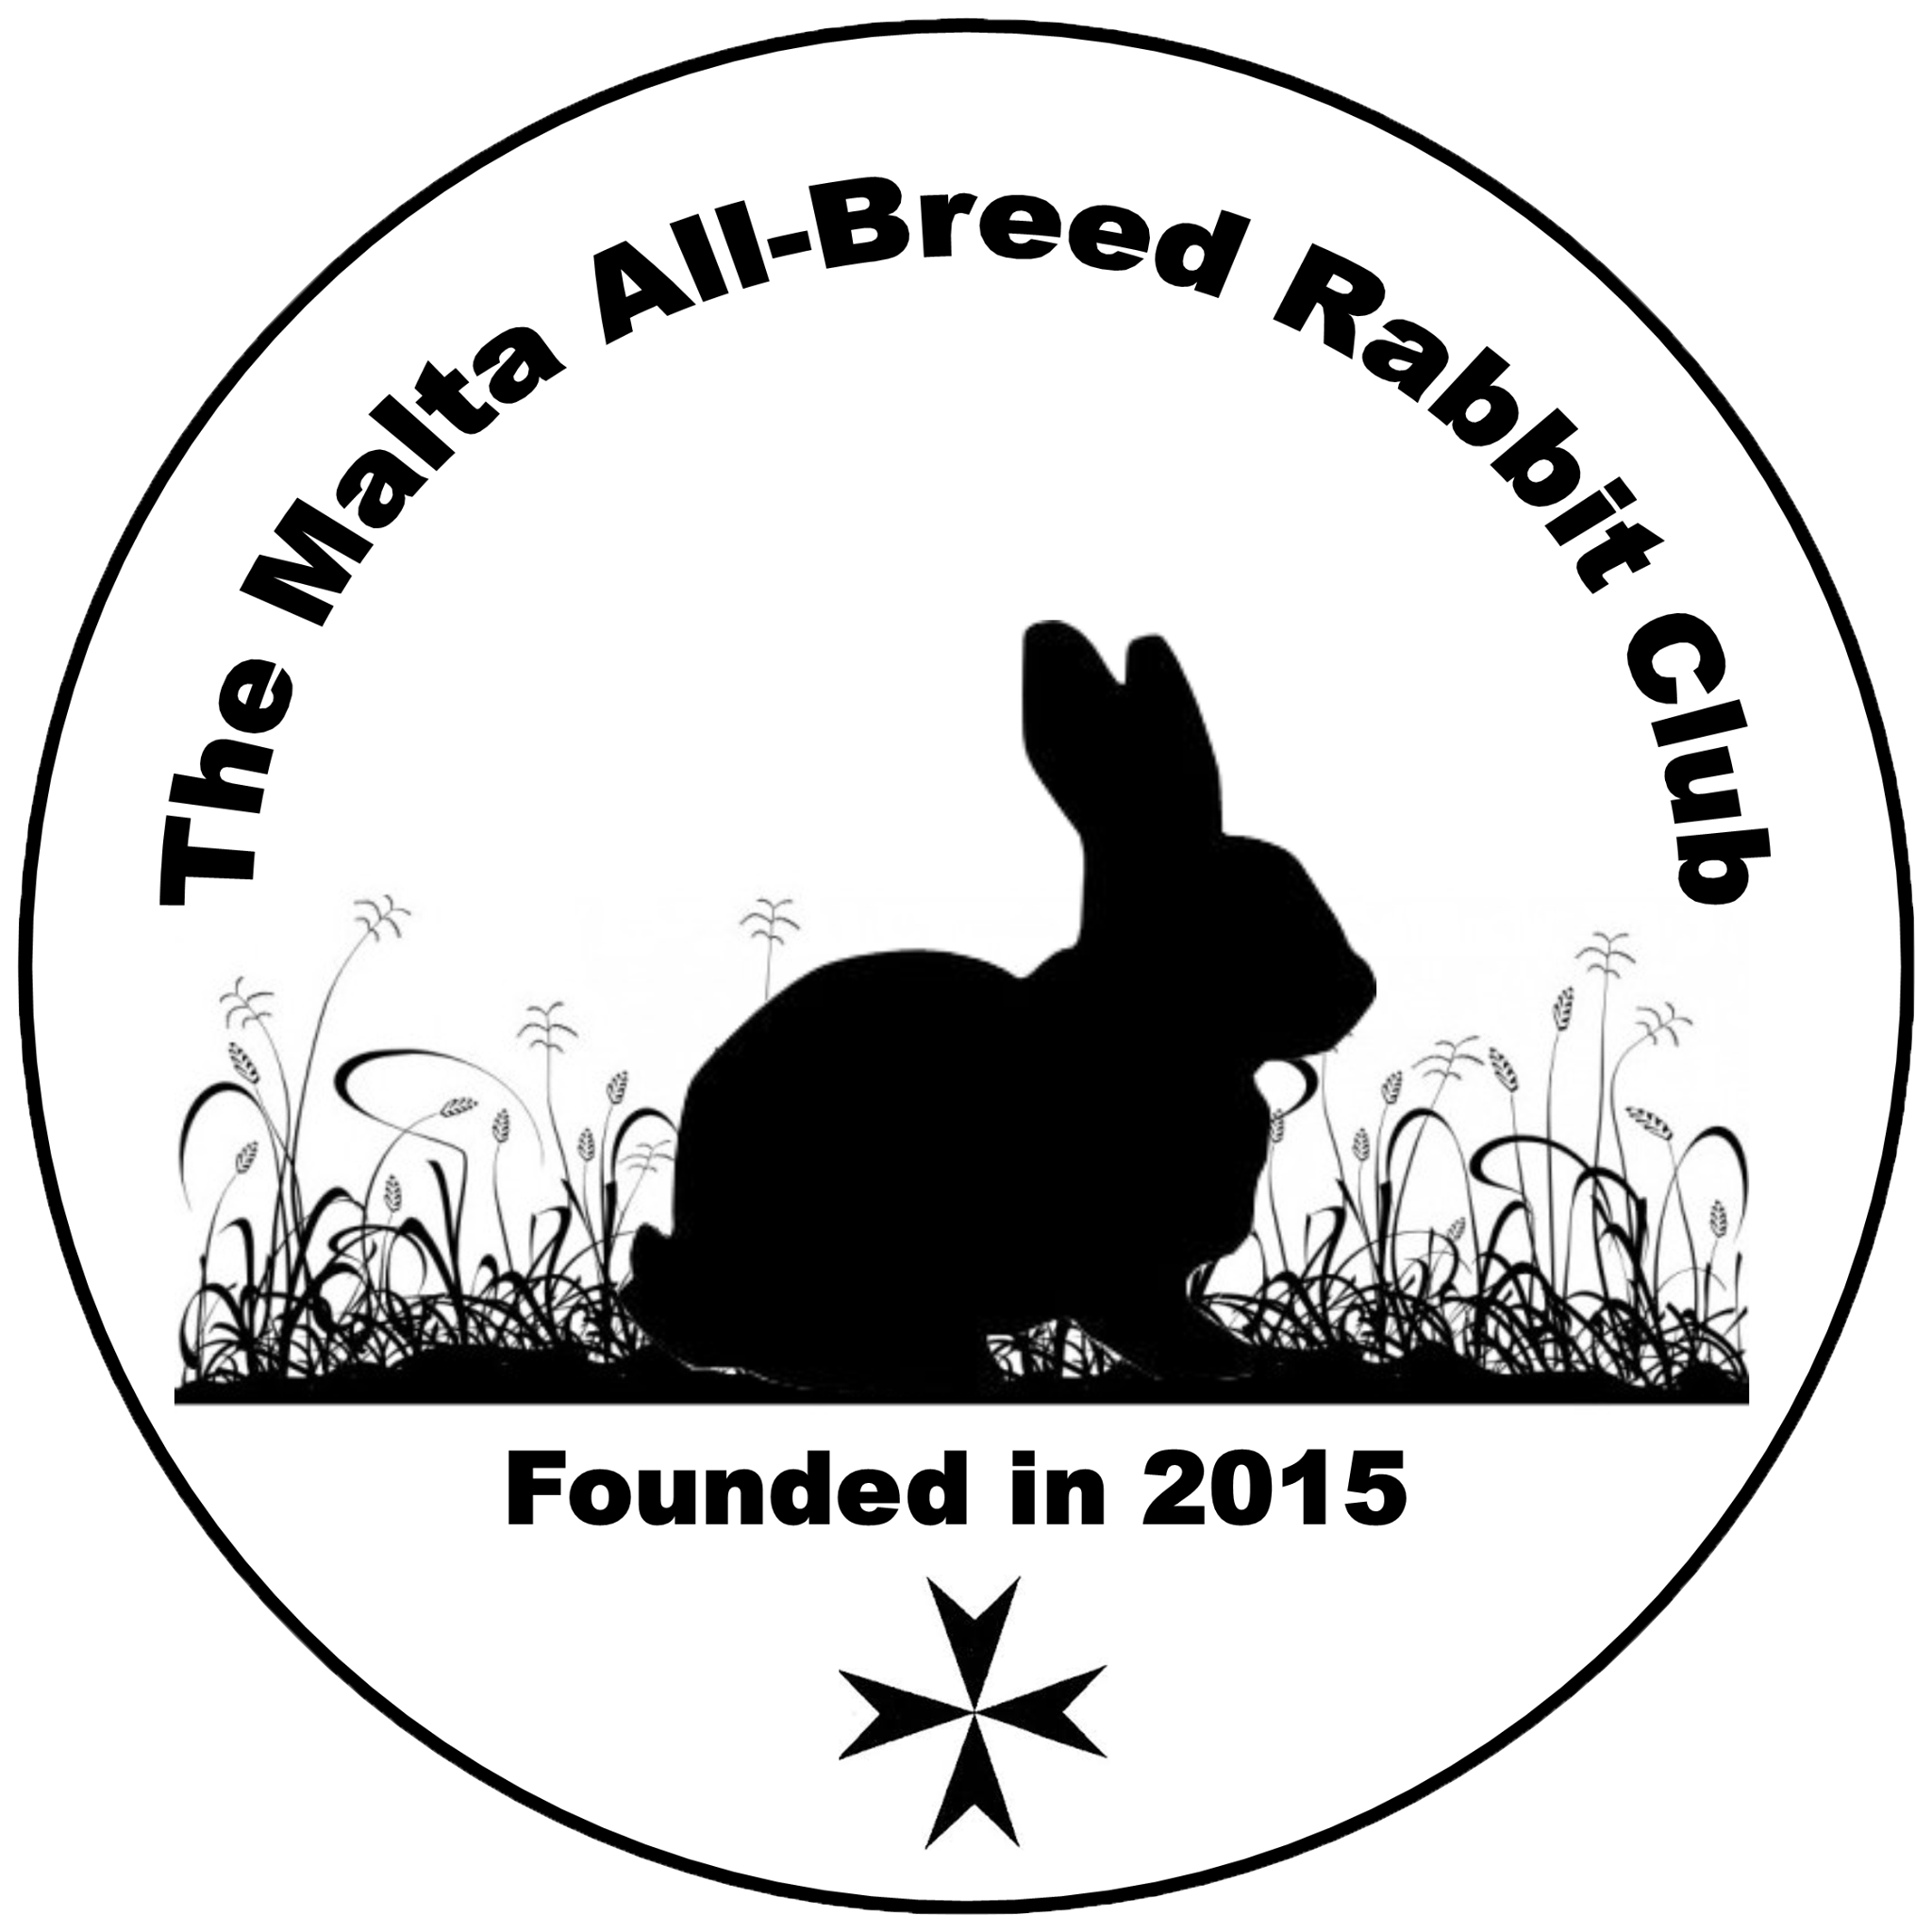 The Malta All-Breed Rabbit Club